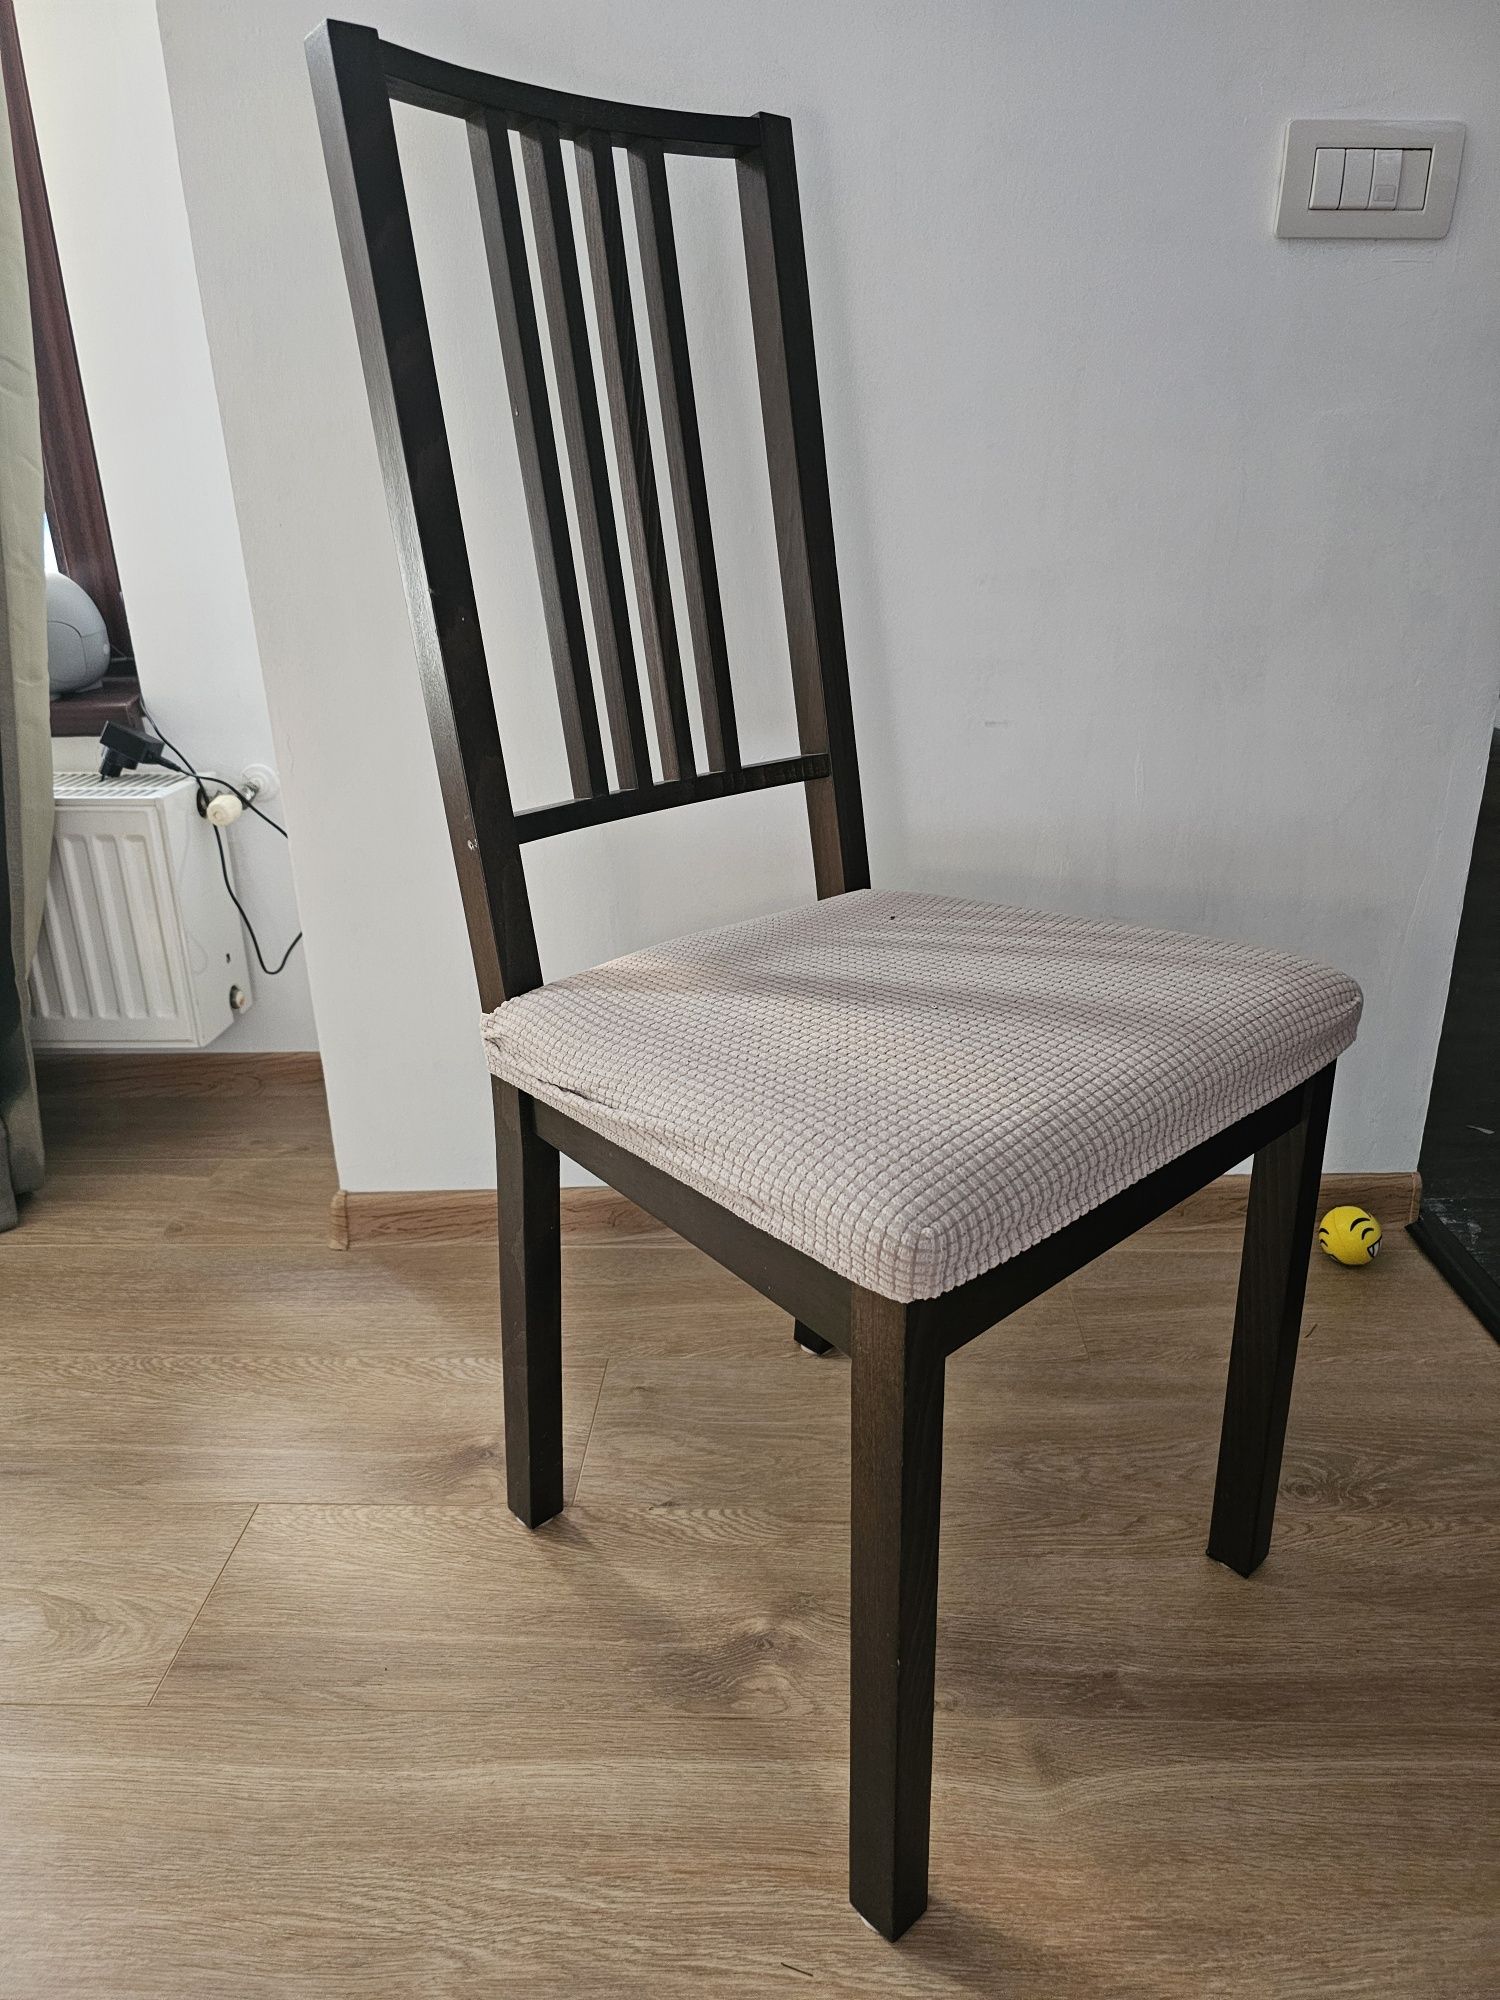 Masa IKEA 900x900 cm extensibila cu 4 scaune